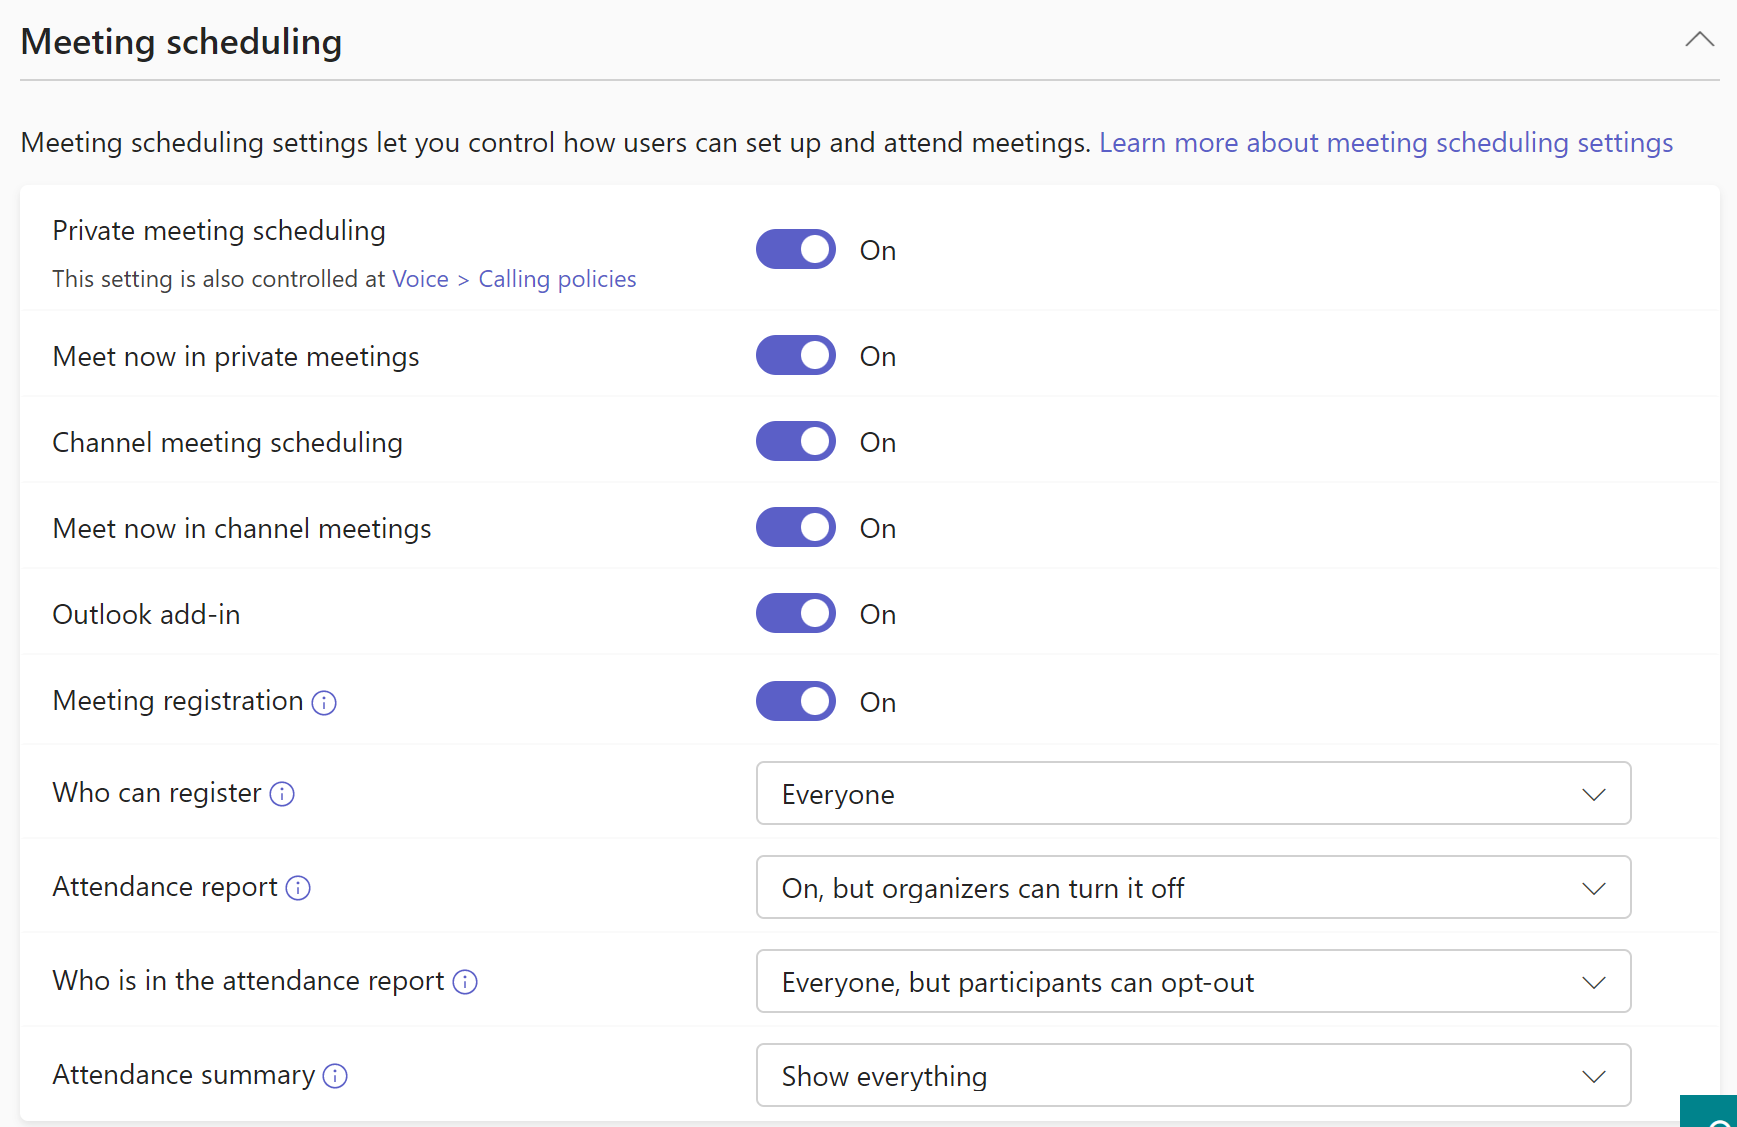 Capture d’écran des paramètres de planification de réunion dans la stratégie de réunion.